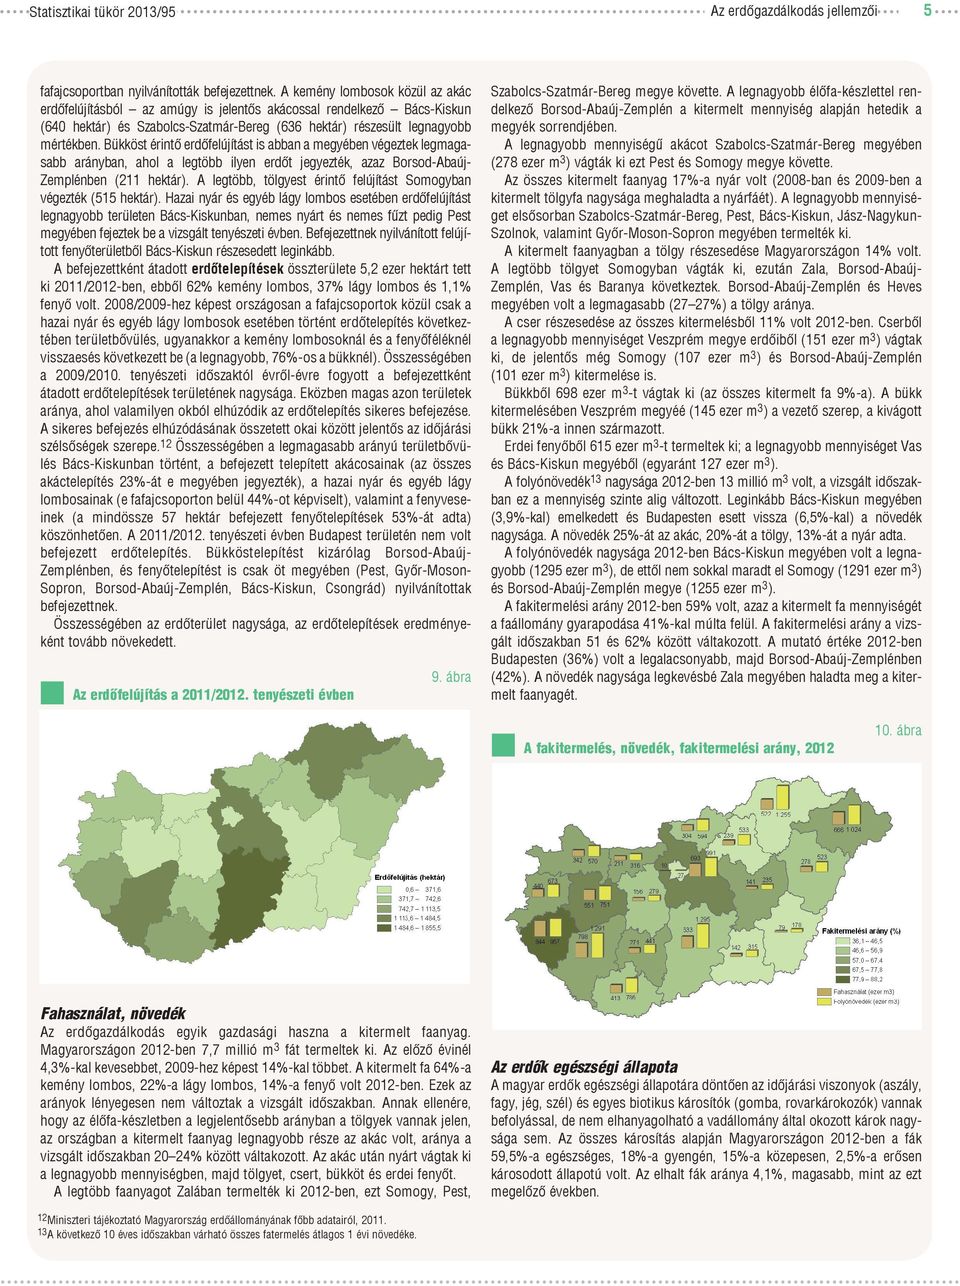 Bükköst érintő erdőfelújítást is abban a megyében végeztek legmagasabb arányban, ahol a legtöbb ilyen erdőt jegyezték, azaz Borsod-Abaúj- Zemplénben (211 hektár).